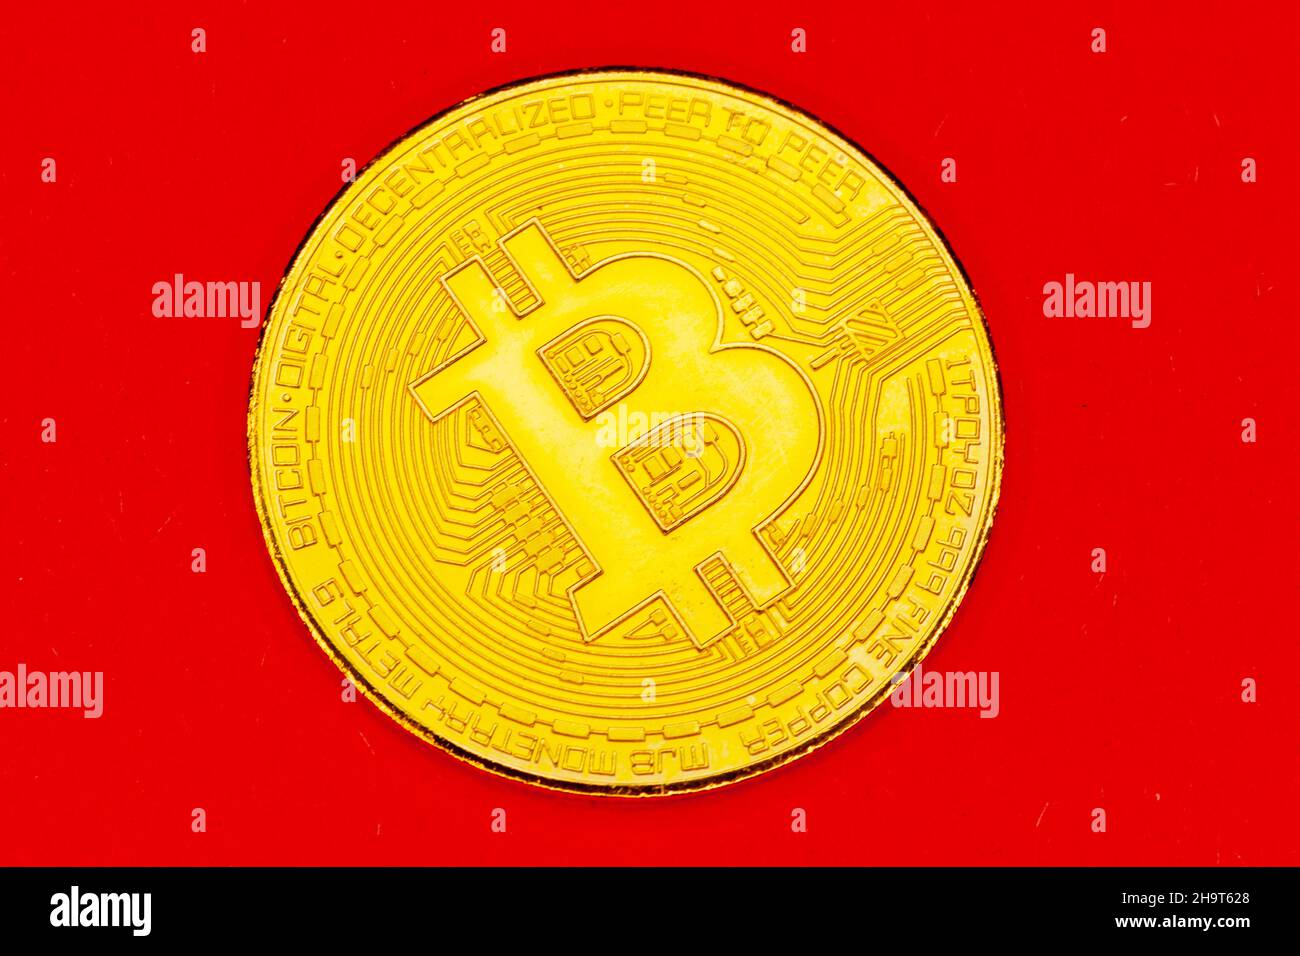 Moneda de Bitcoin crytocurencey. Foto de stock